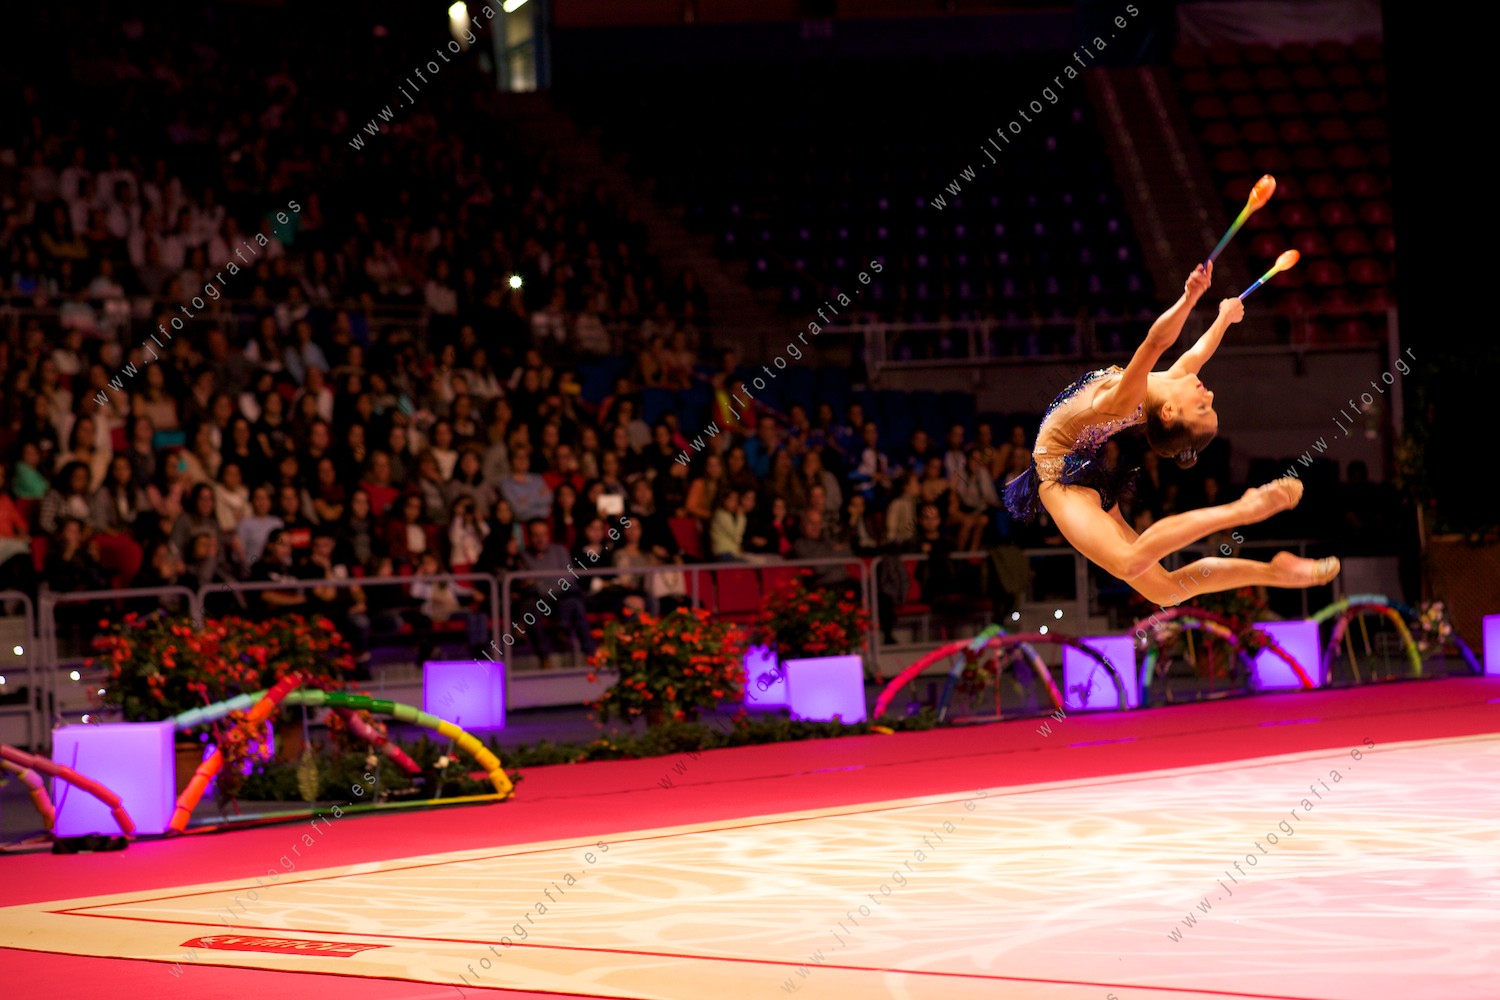 Euskalgym 11 de 2016 en el Fernando Buesa Arena, gimnasta en pleno salto con las mazas.